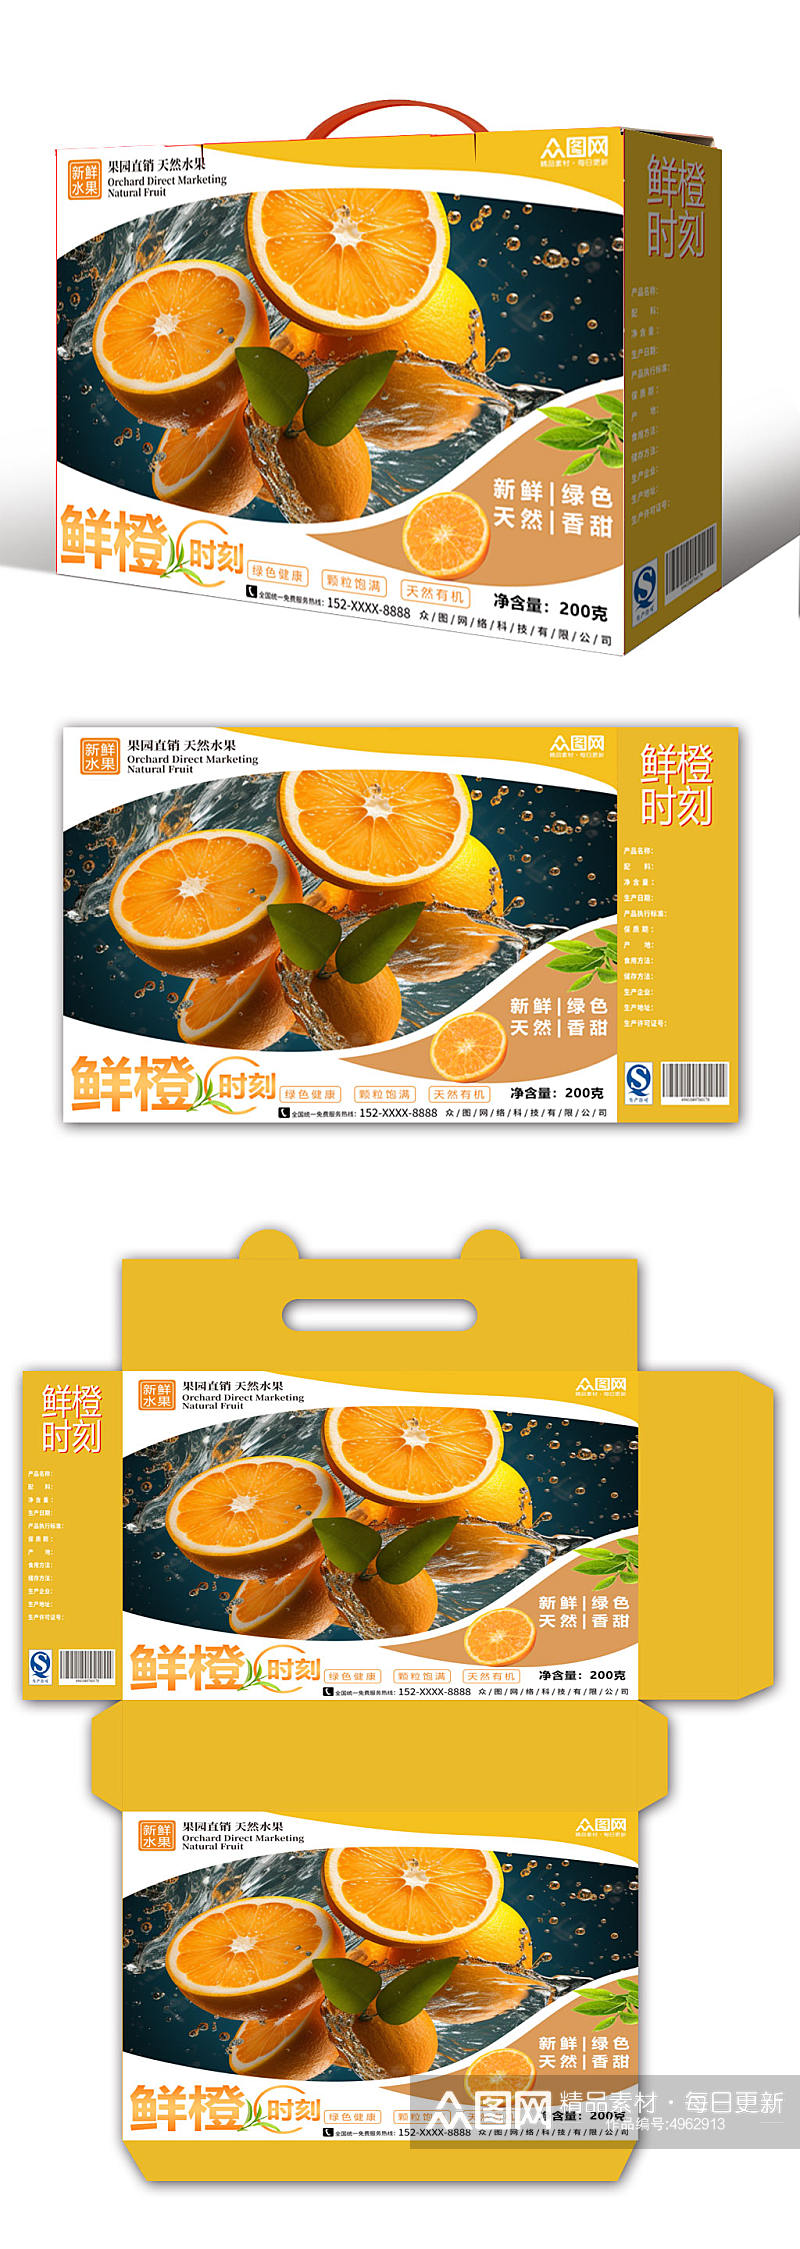 黄色鲜橙橙子礼盒包装设计素材